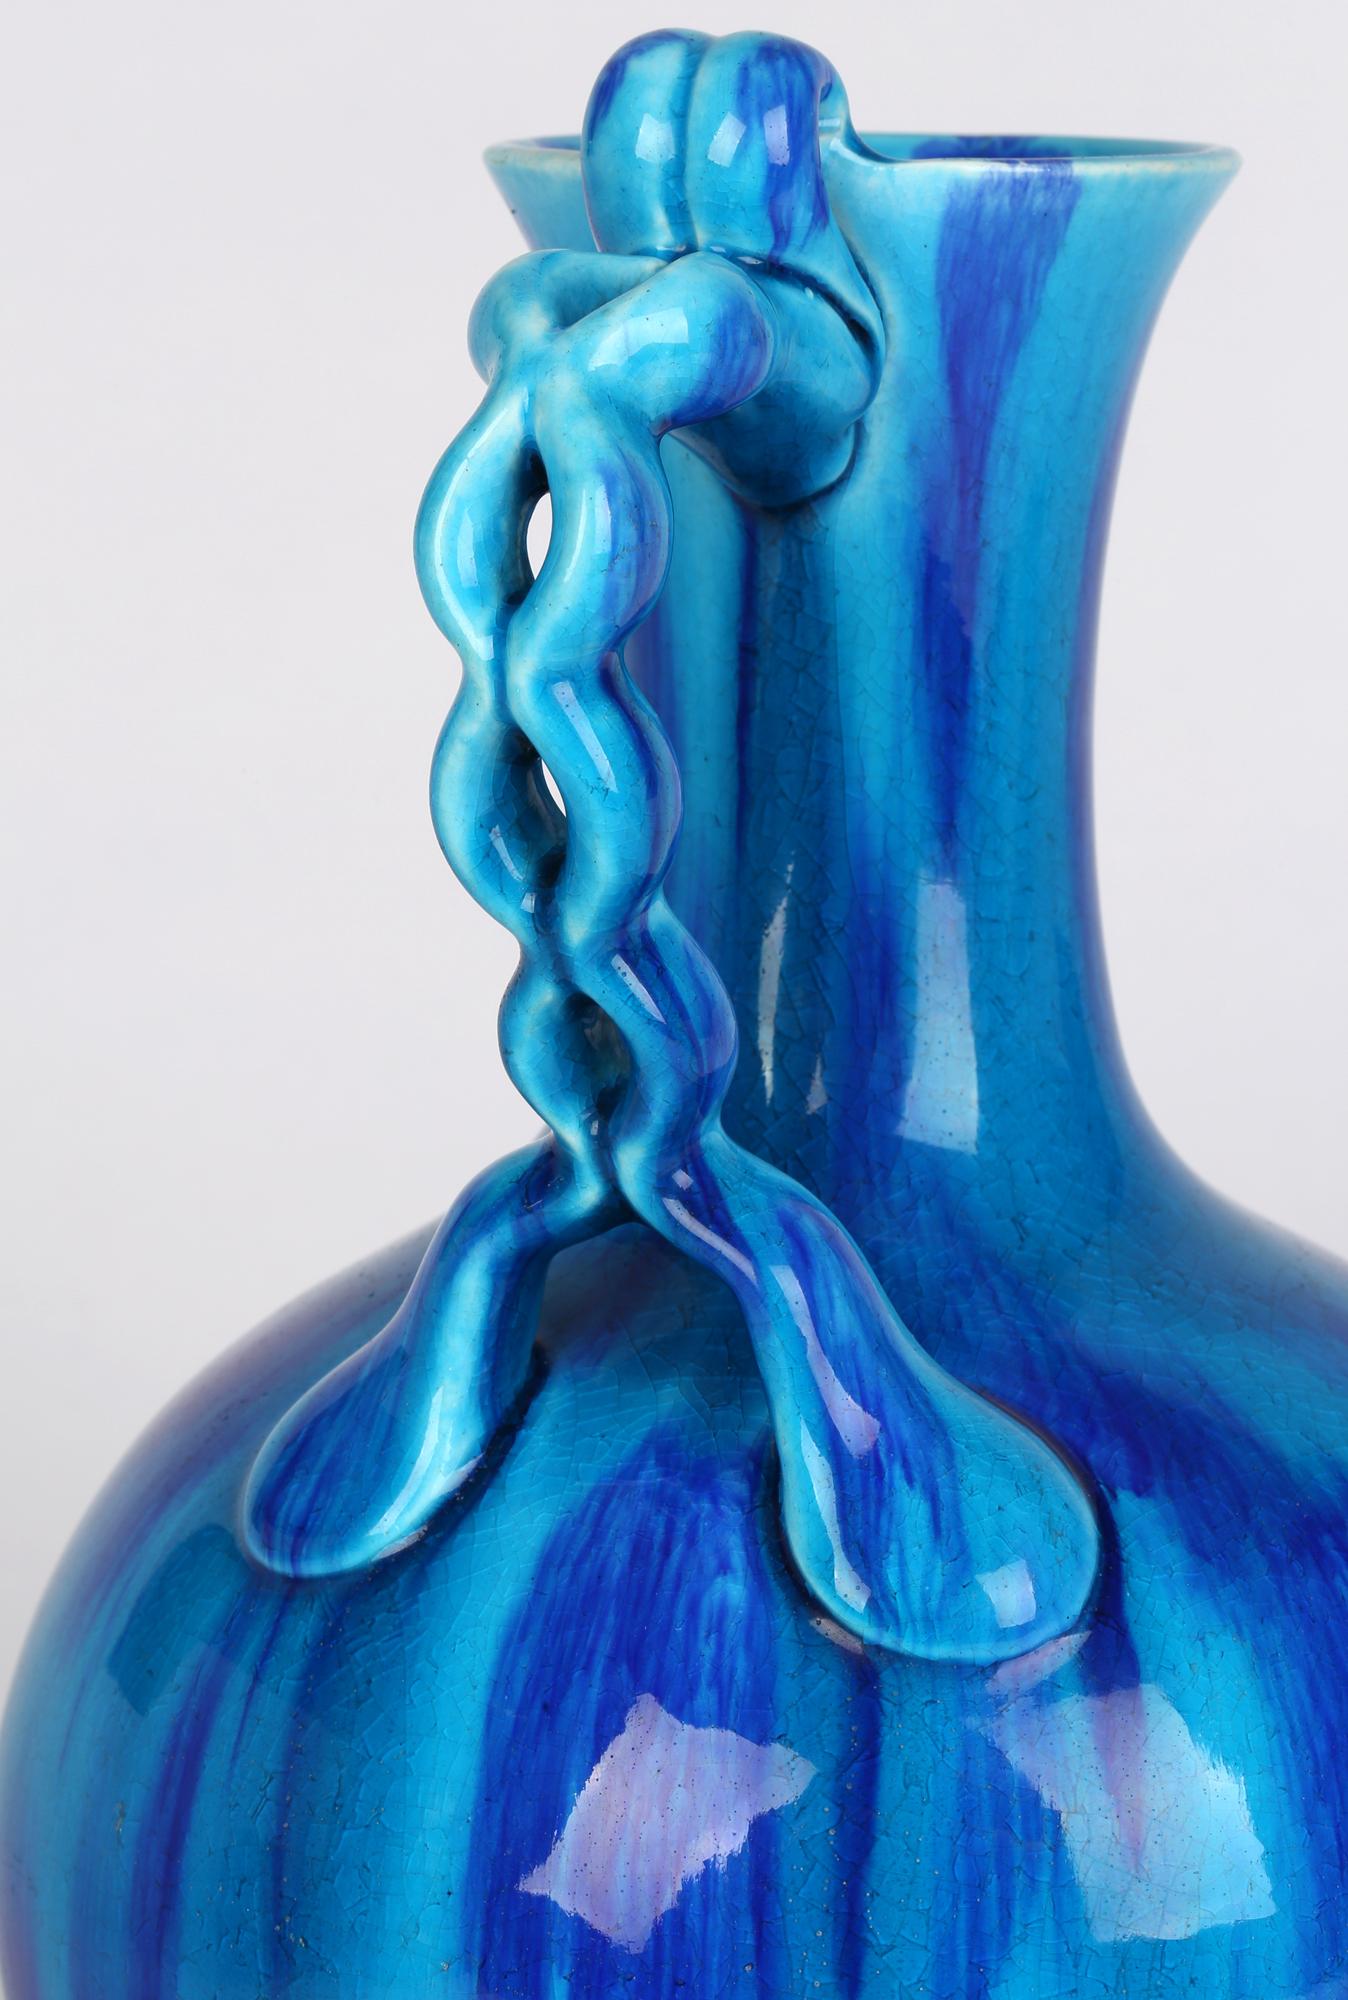 Minton Aesthetic Movement Blue & Turquoise Glazed Handled Art Pottery Vase 4